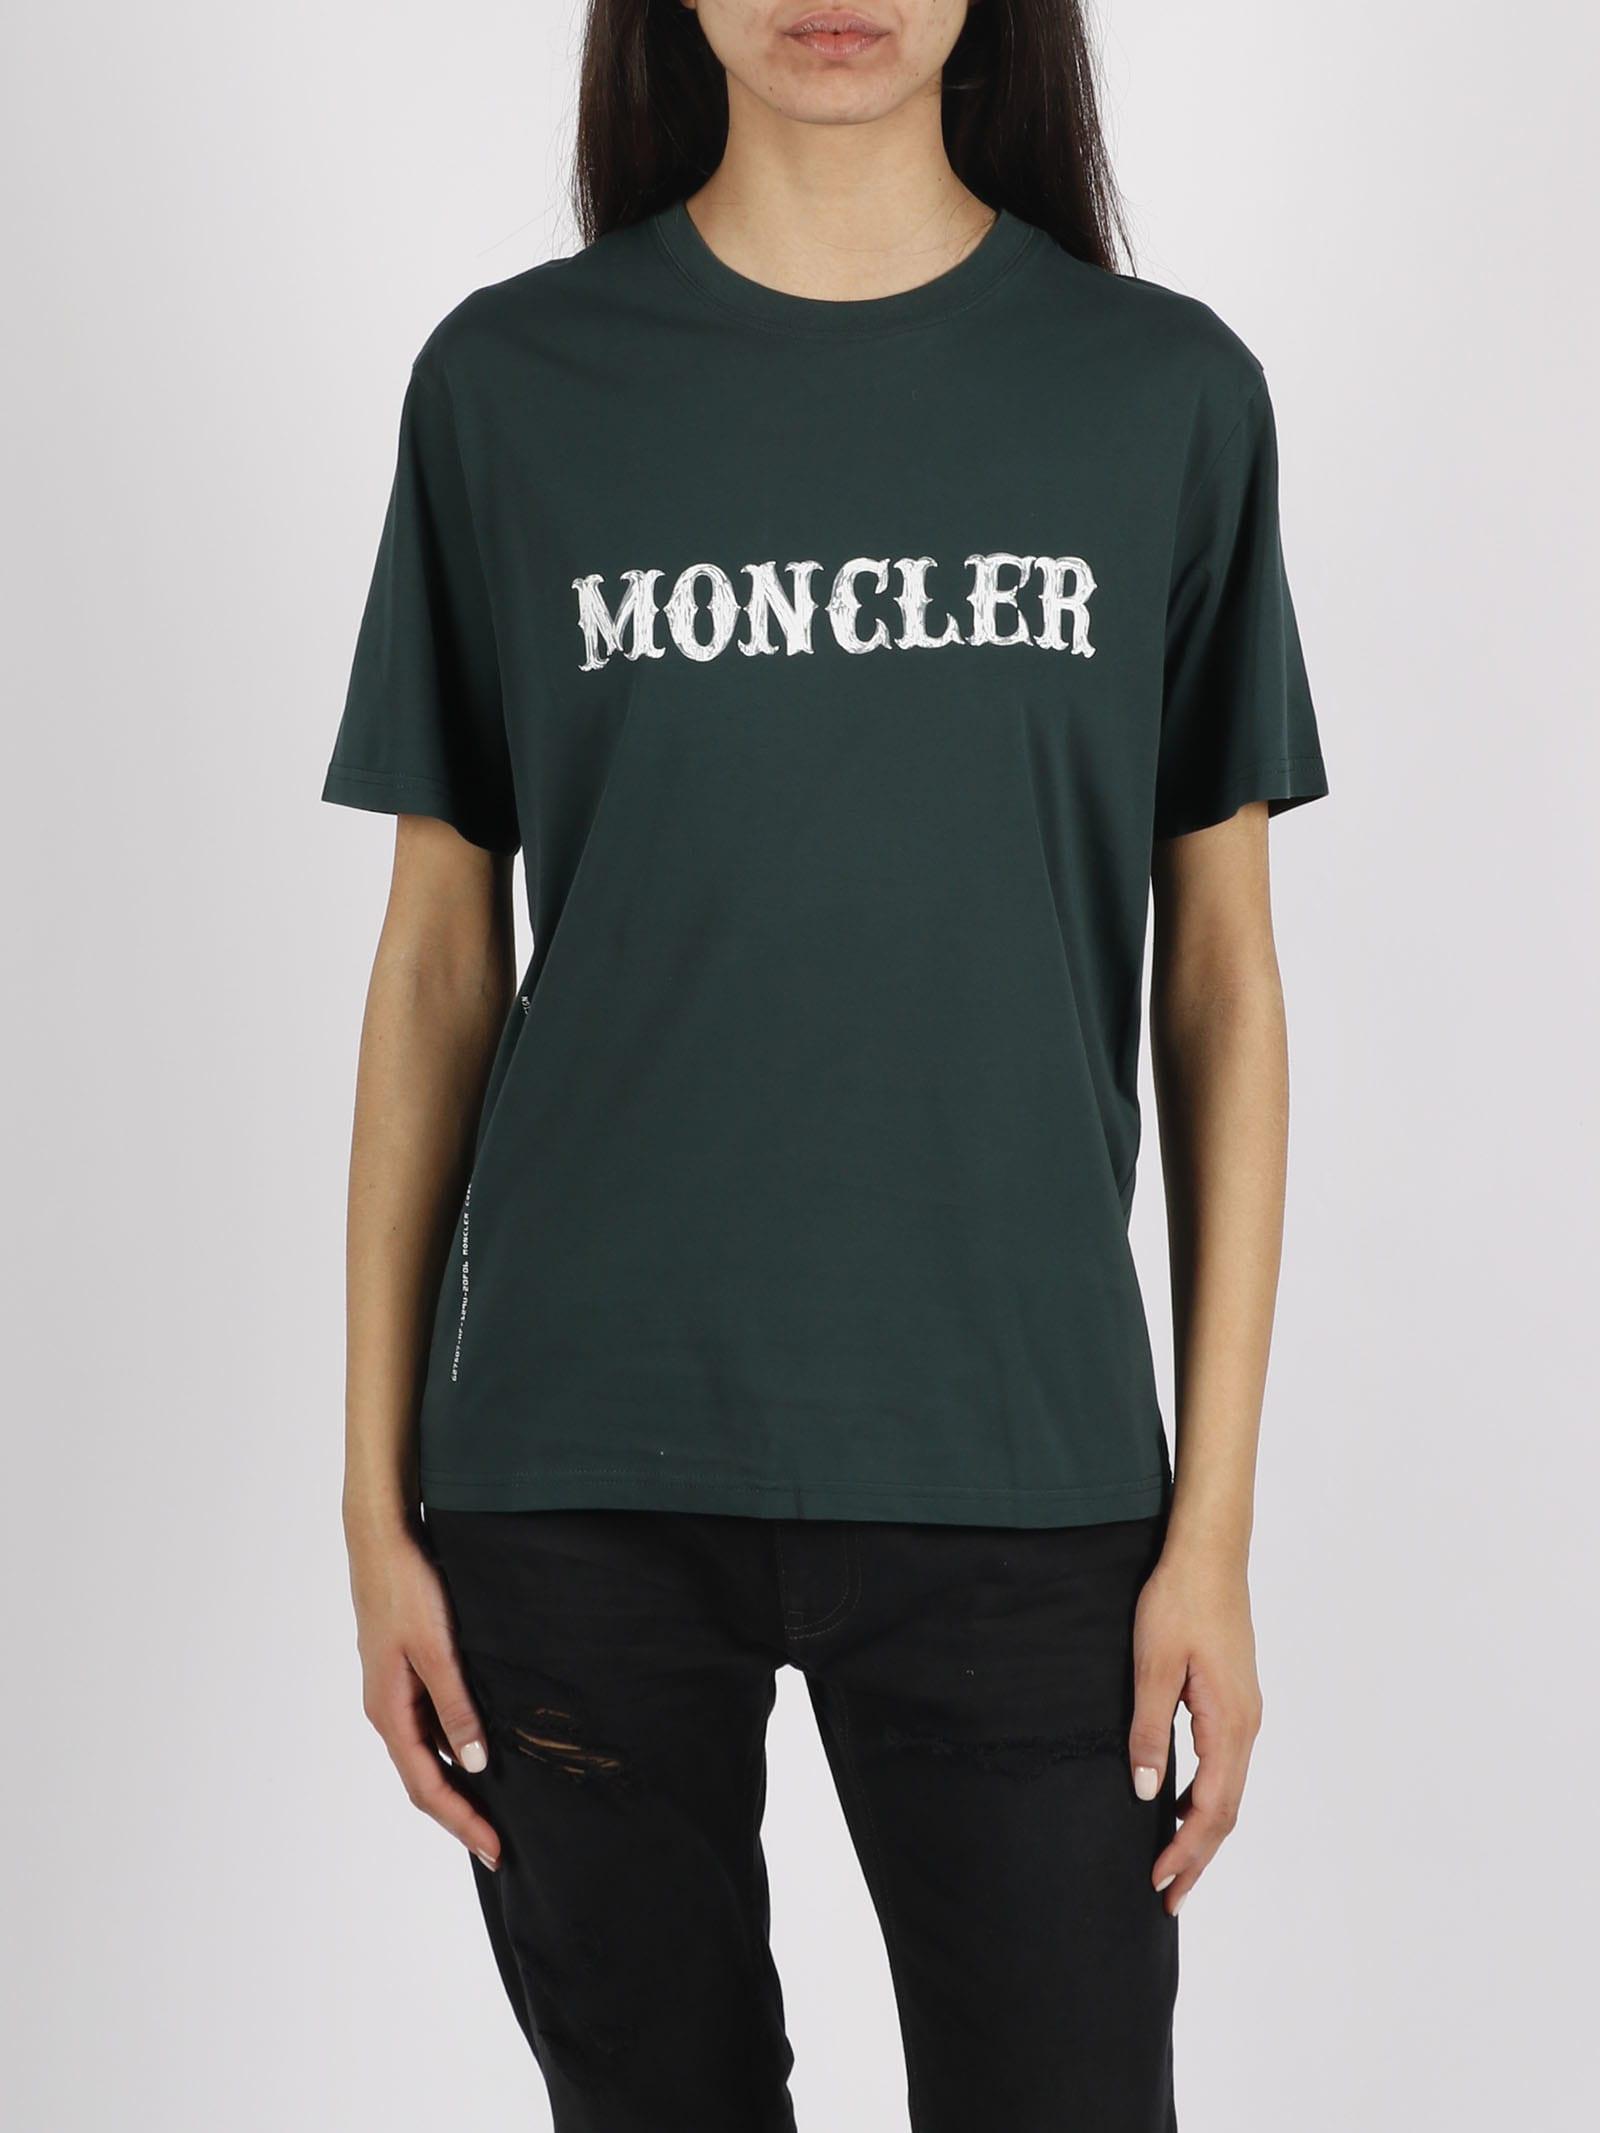 Moncler Genius Frgmt Ss T-shirt in Green | Lyst